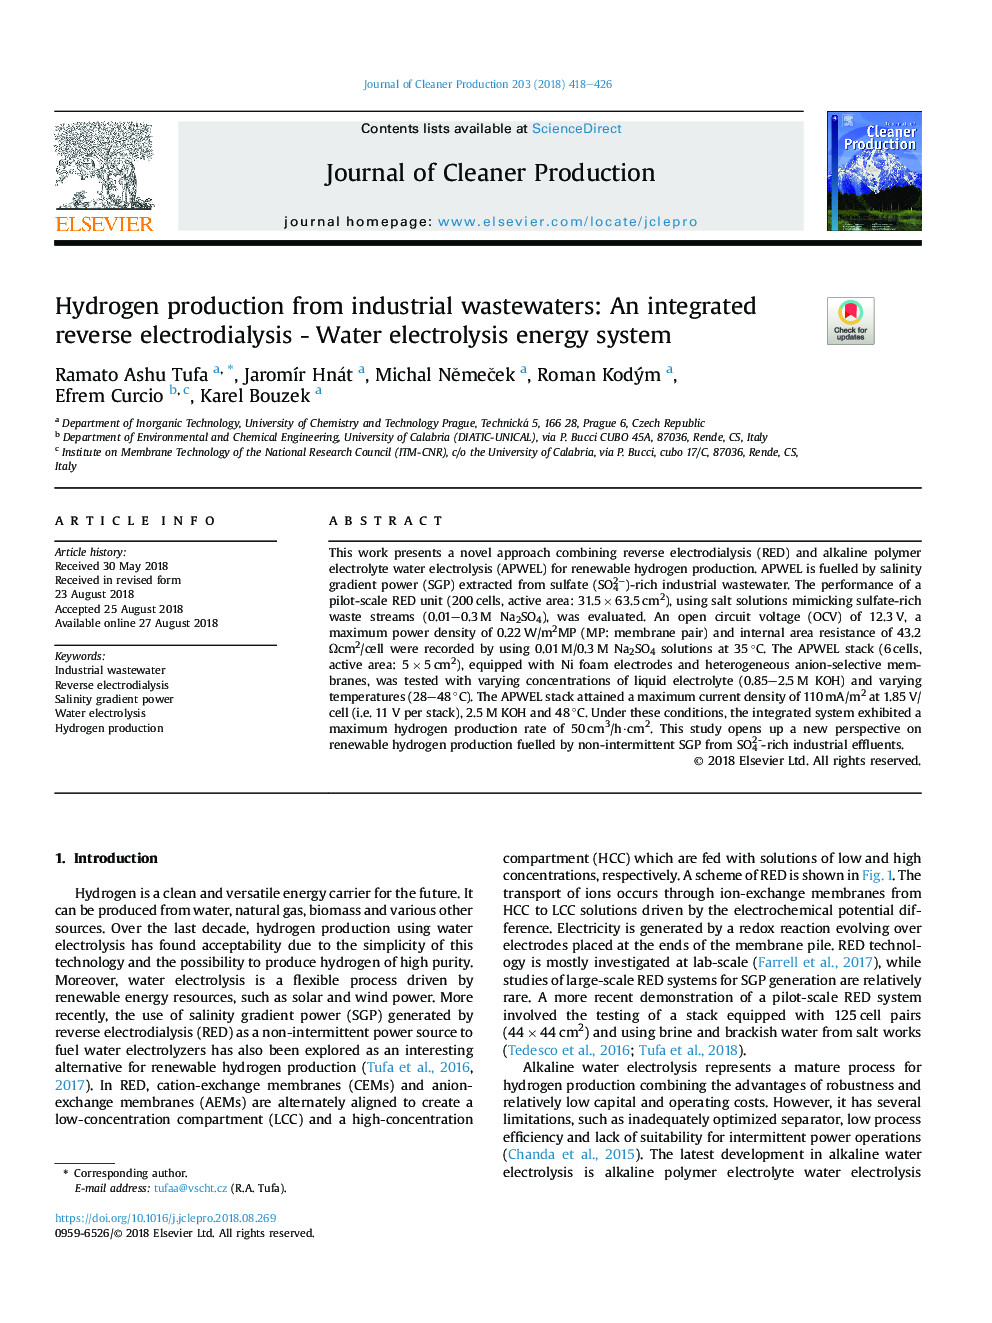 تولید هیدروژن از فاضلاب های صنعتی: الکترو دی دیالیز معکوس یکپارچه - سیستم انرژی الکترولیز